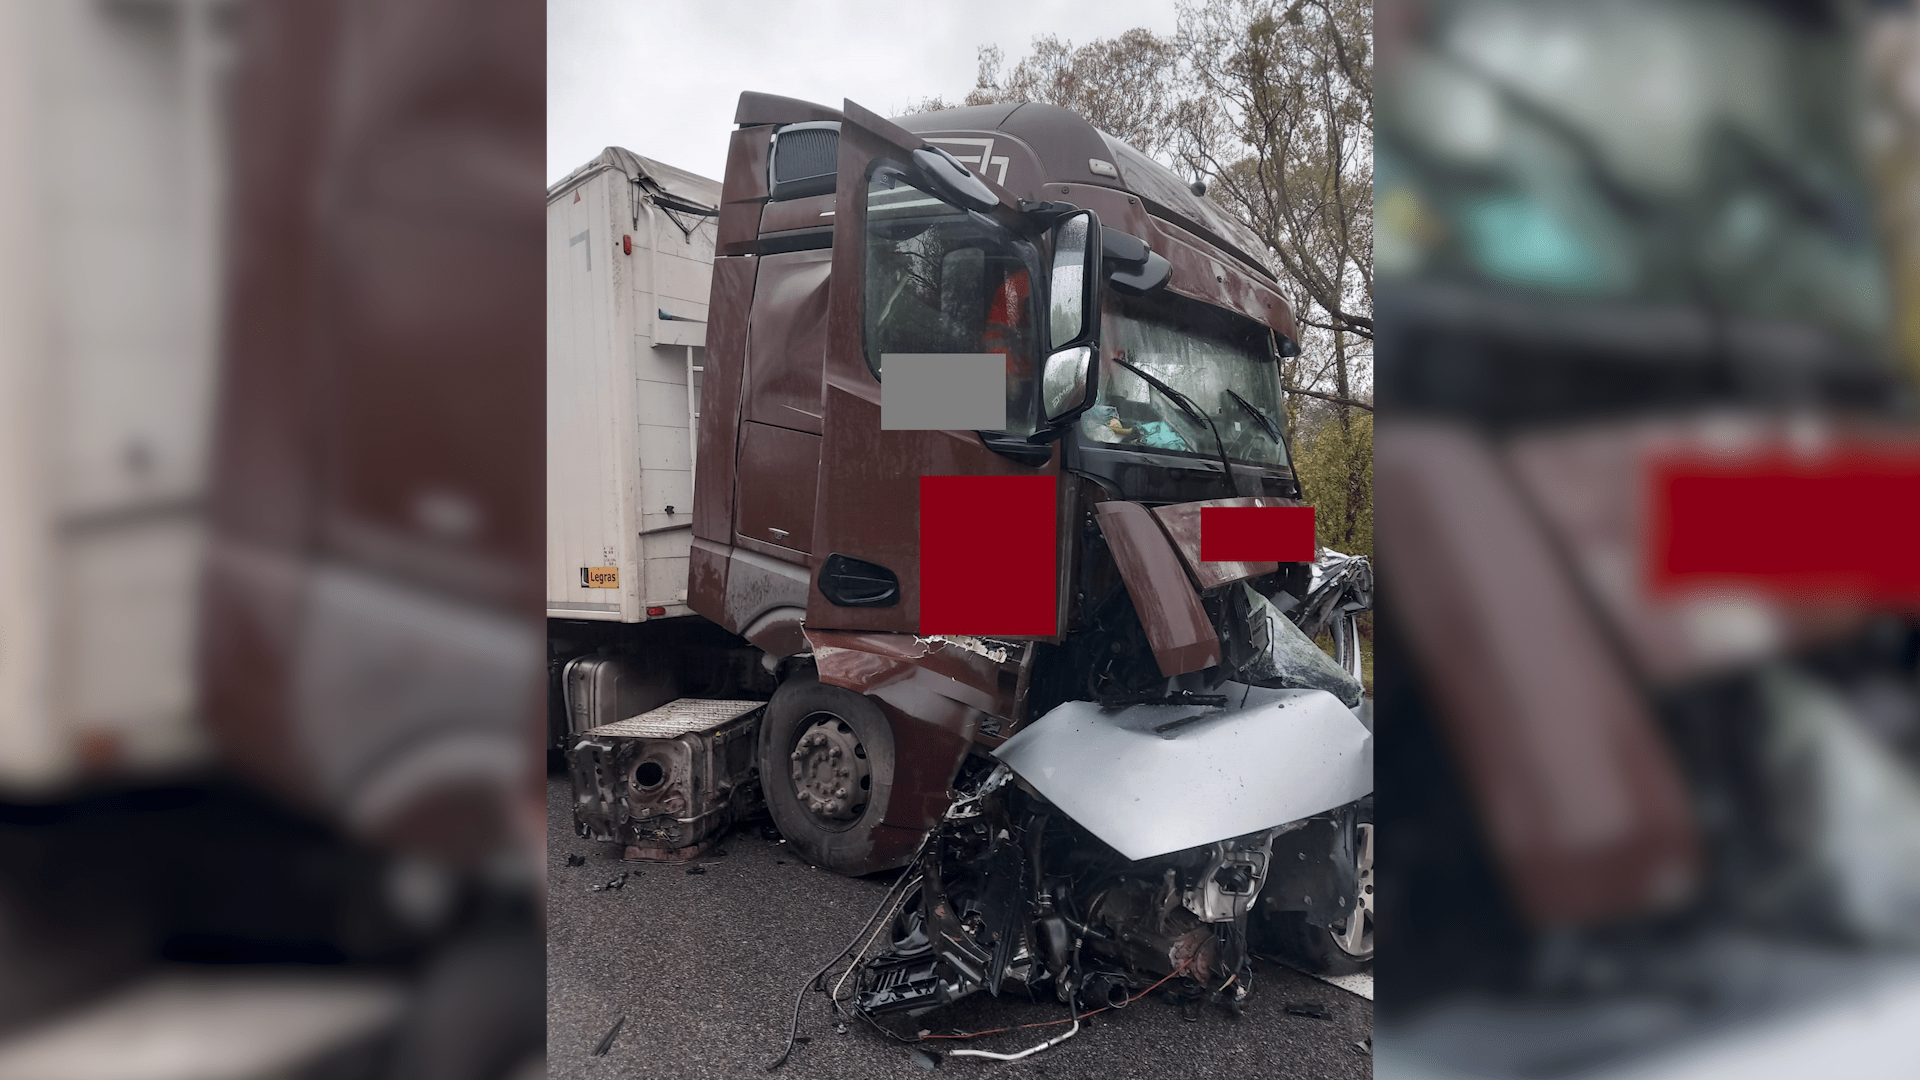 Nehoda kamionu s osobním autem uzavřela jeden z hlavních tahů na Slovensku.